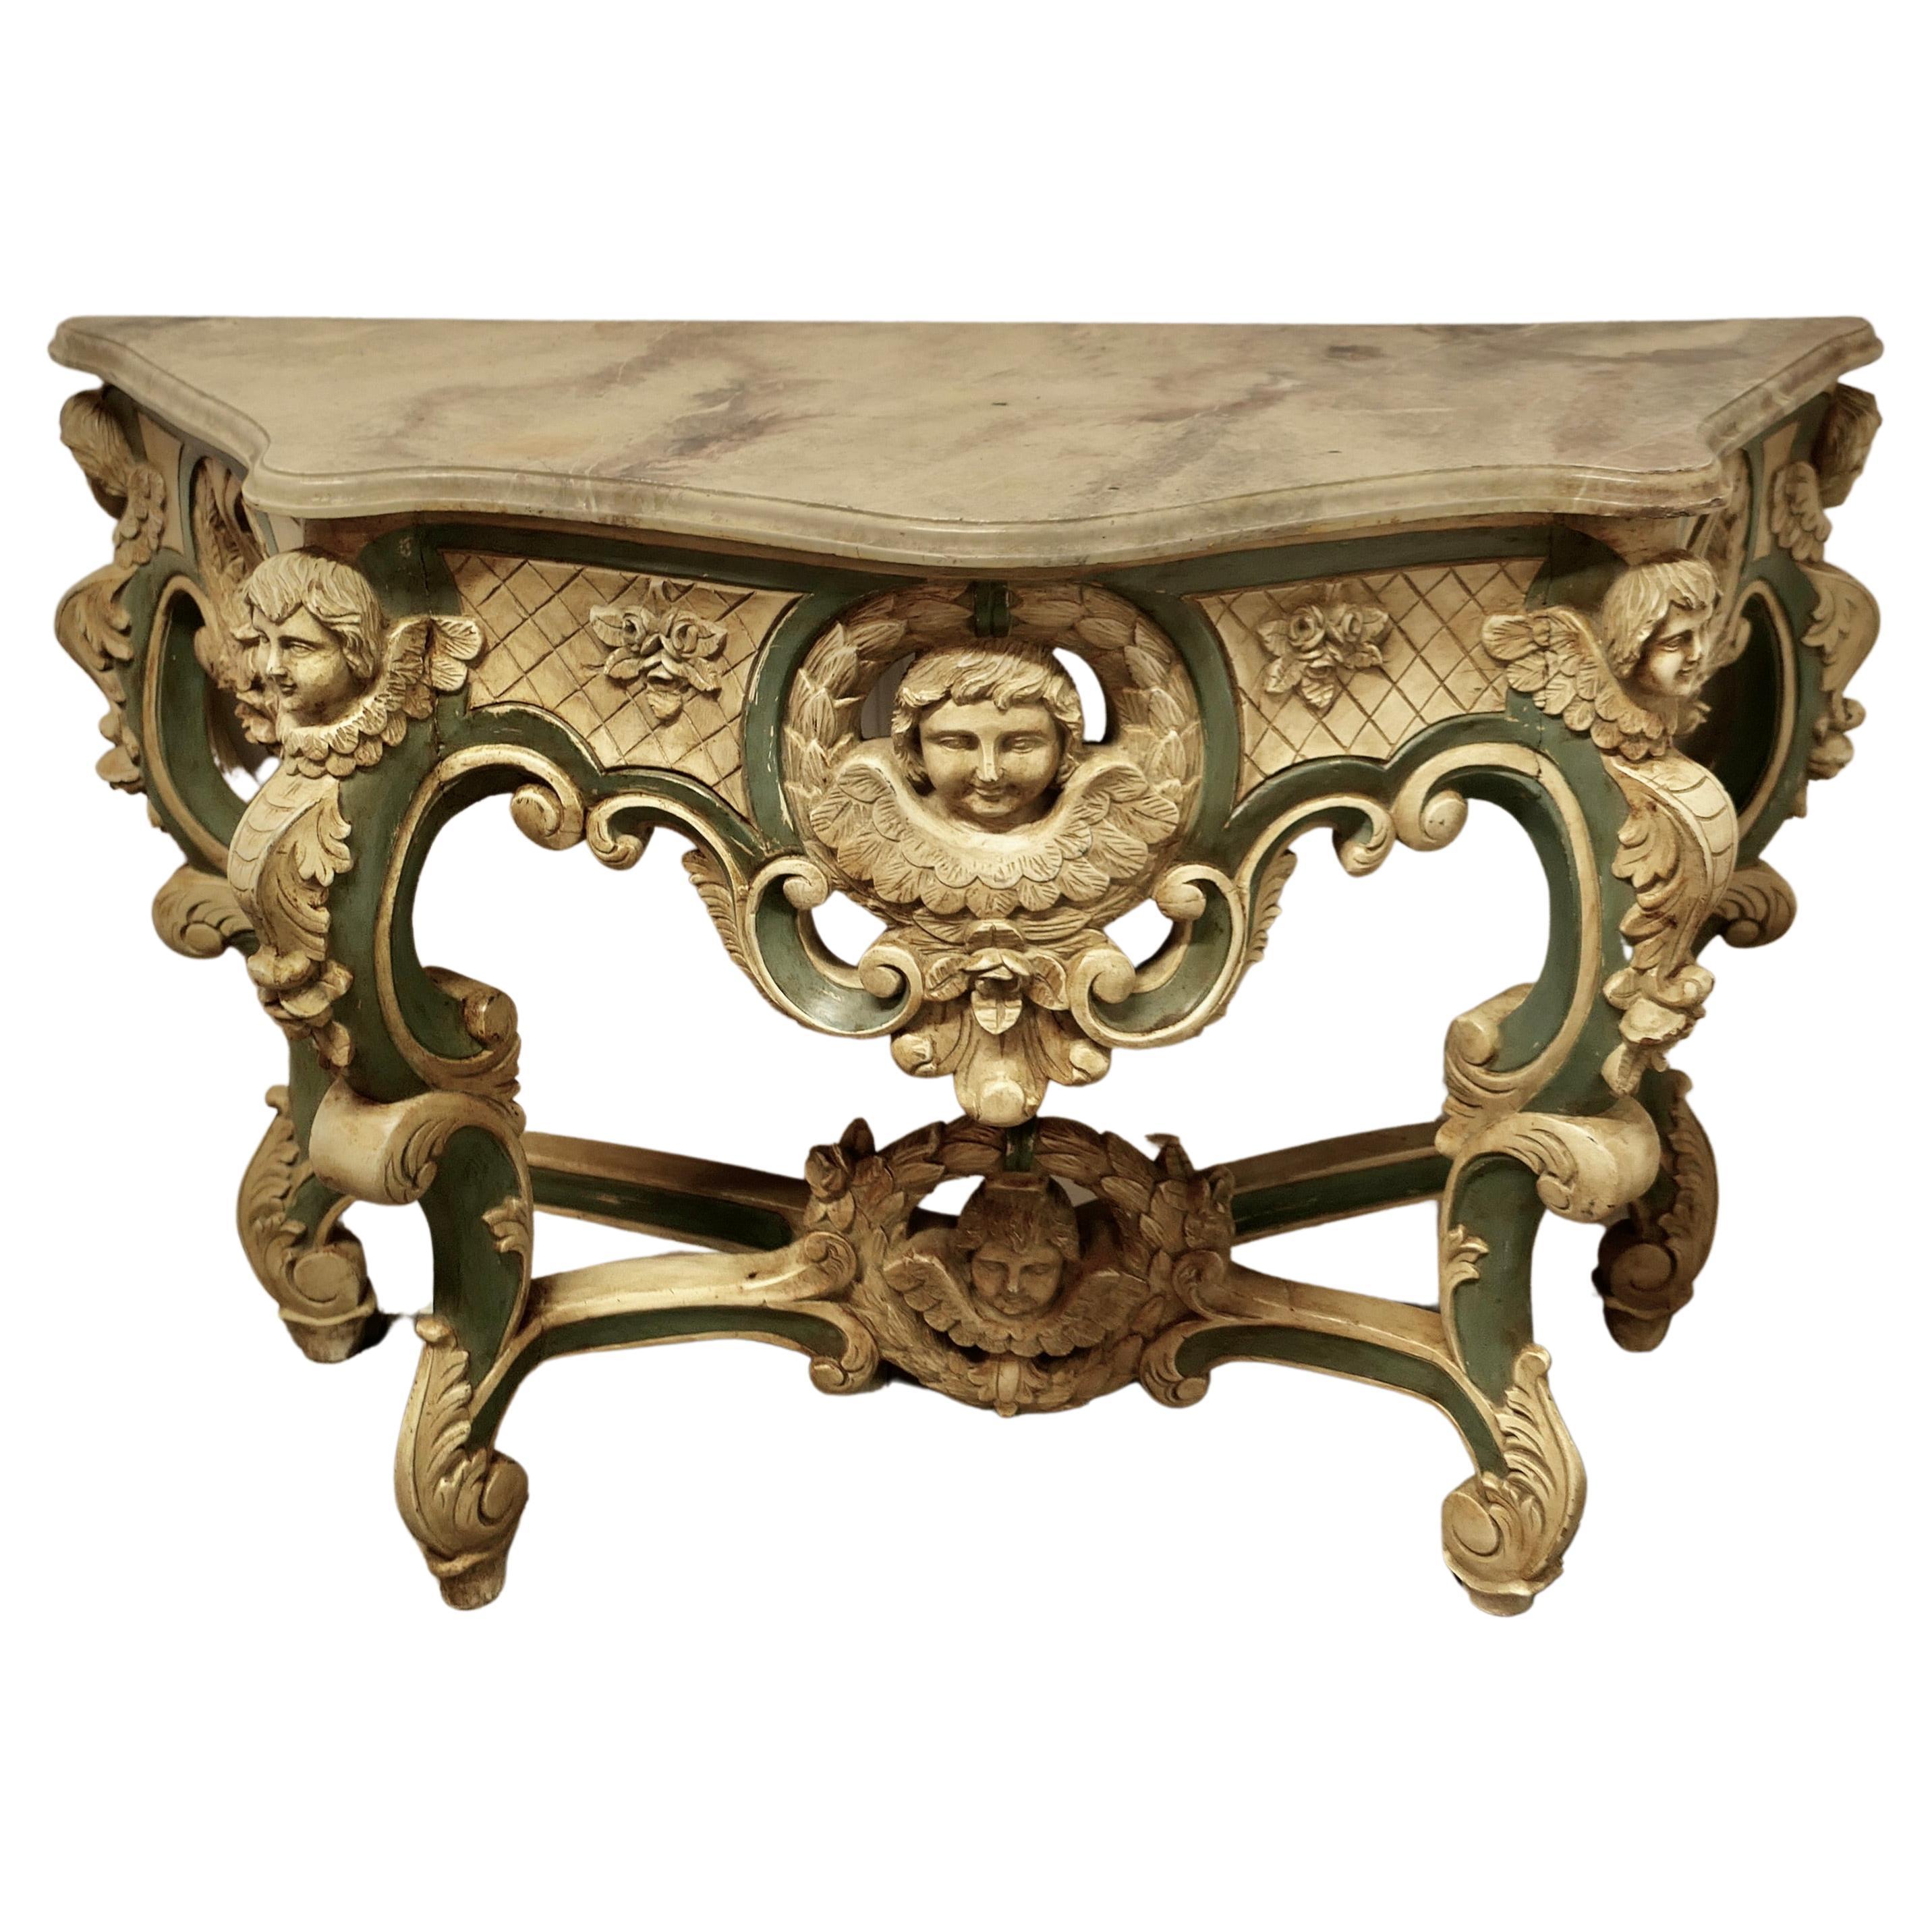  Table console baroque française, sculptée et peinte représentant les visages d'anges